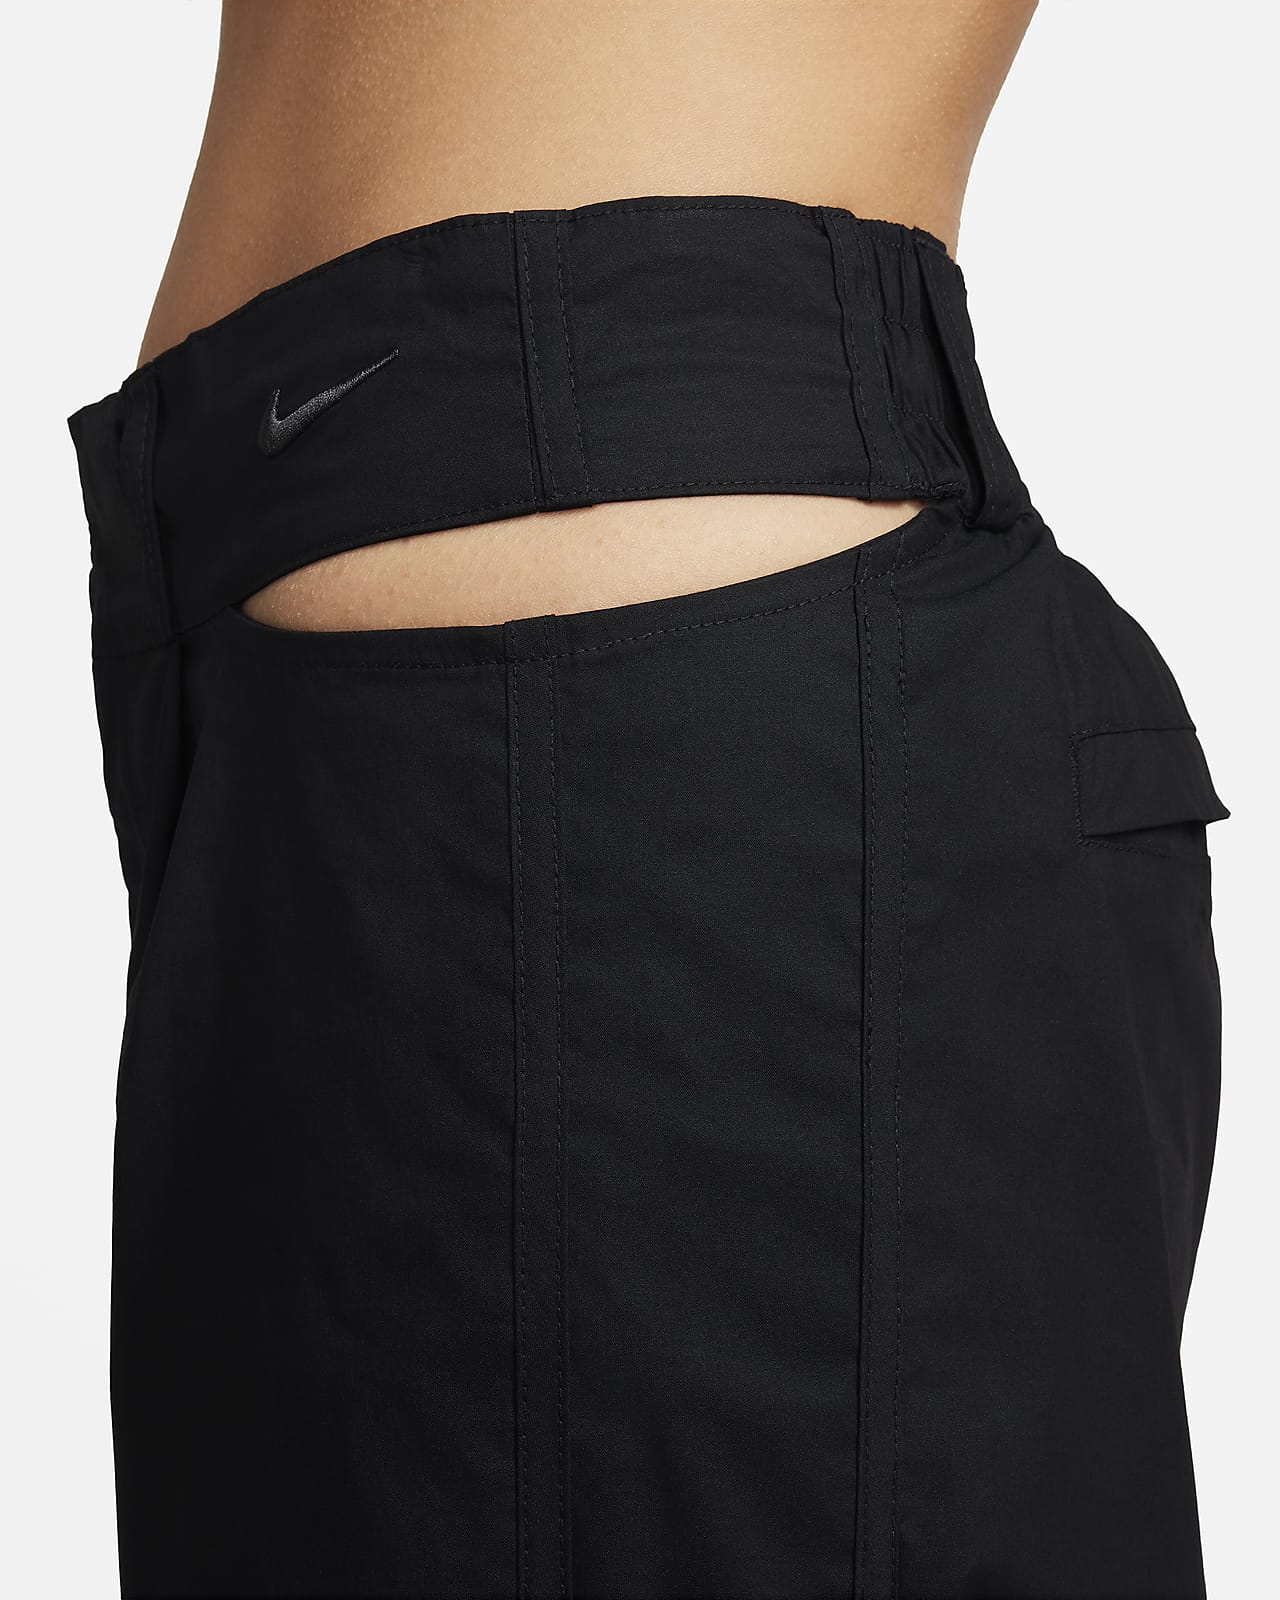 Nike Sportswear Women's Trousers